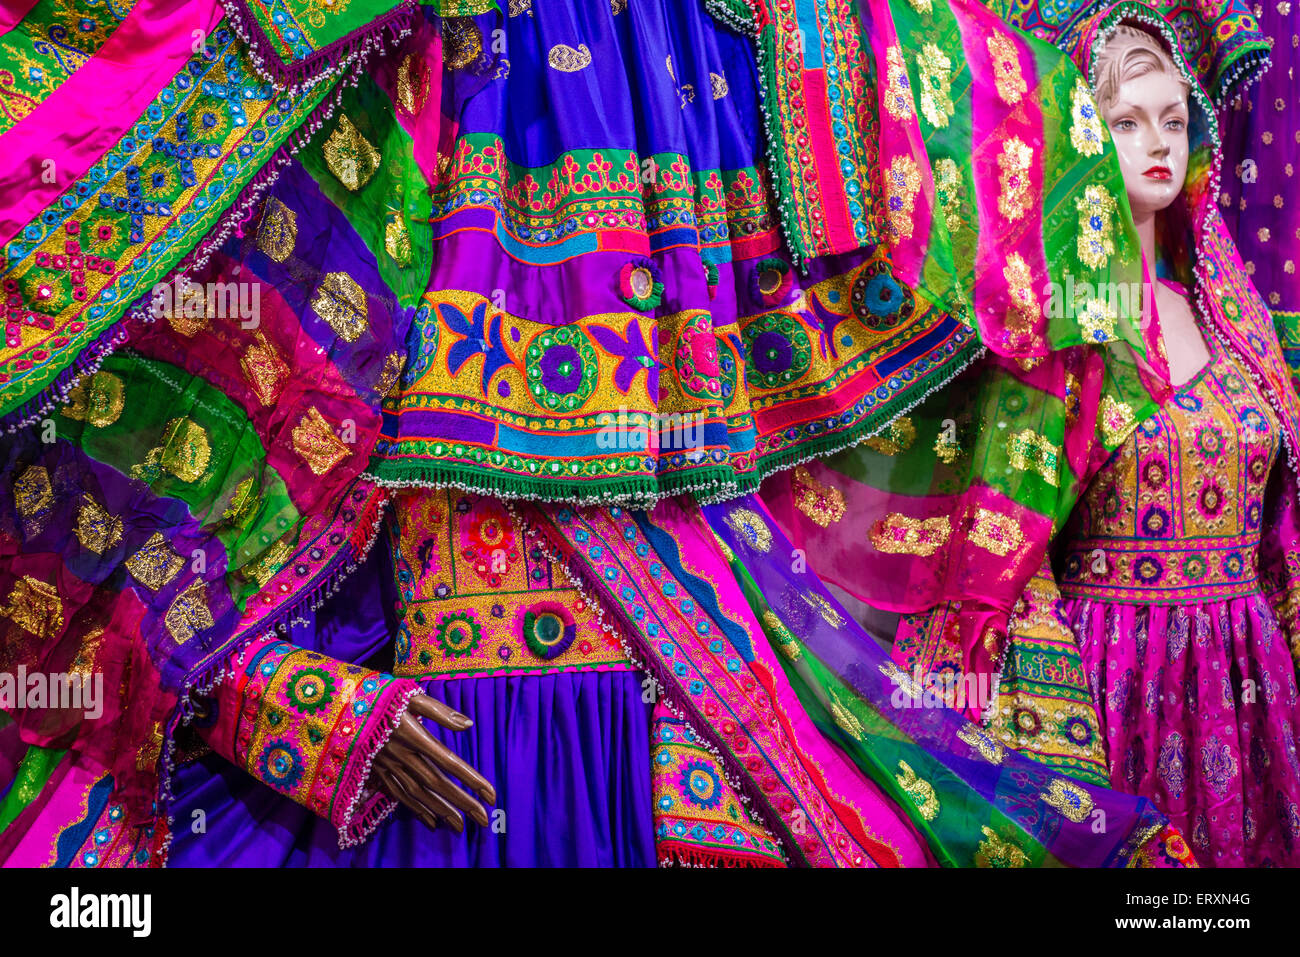 Traditional Afghan Wedding dress, Kabul, Afghanistan Stock Photo